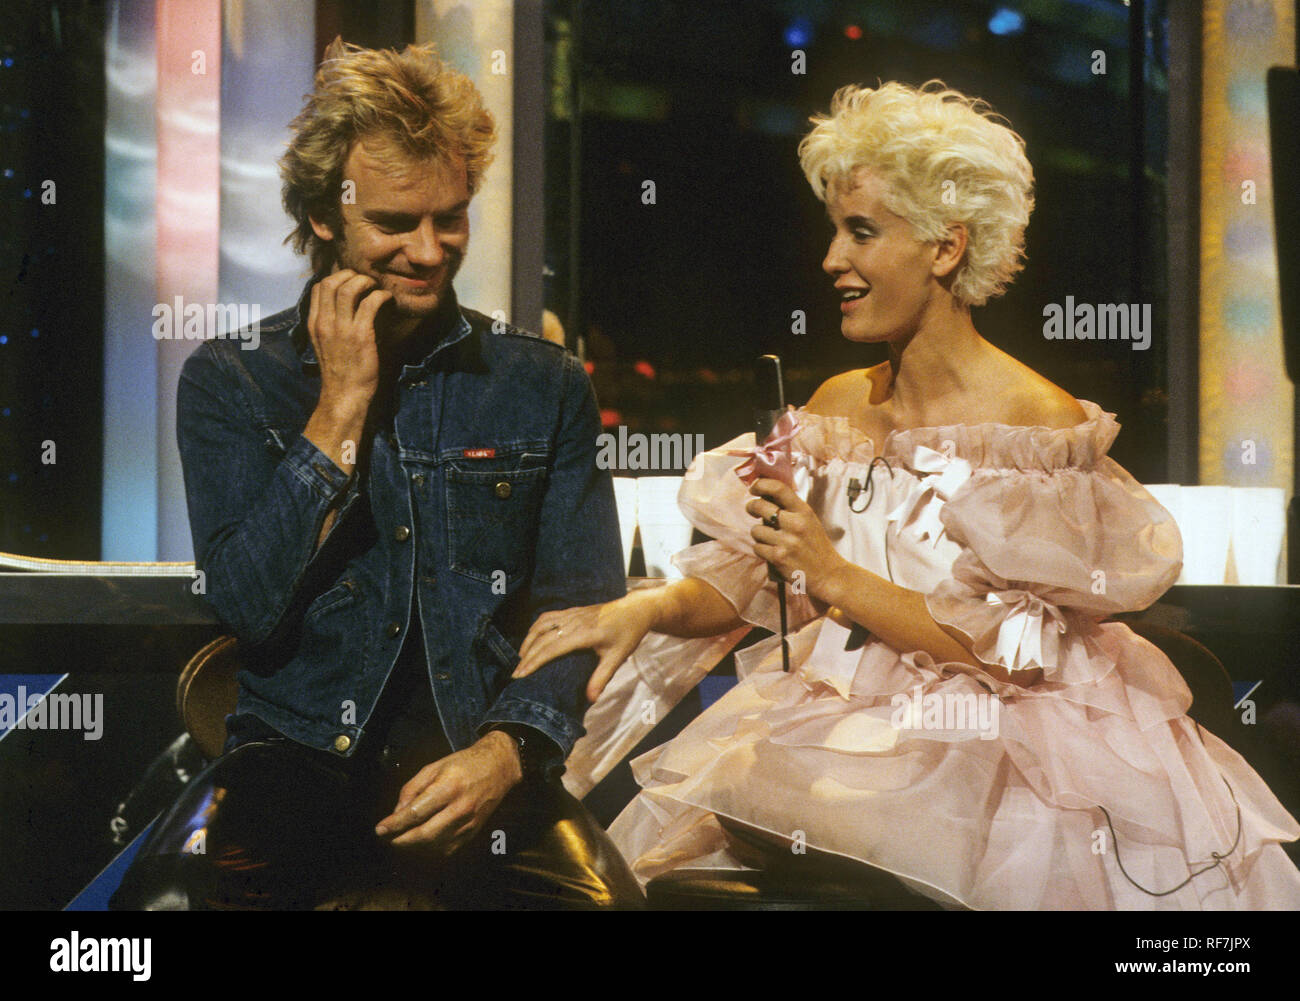 Musicien de rock britannique STING présentateur avec Paula Yates sur le tube TV Show de 1984. Banque D'Images